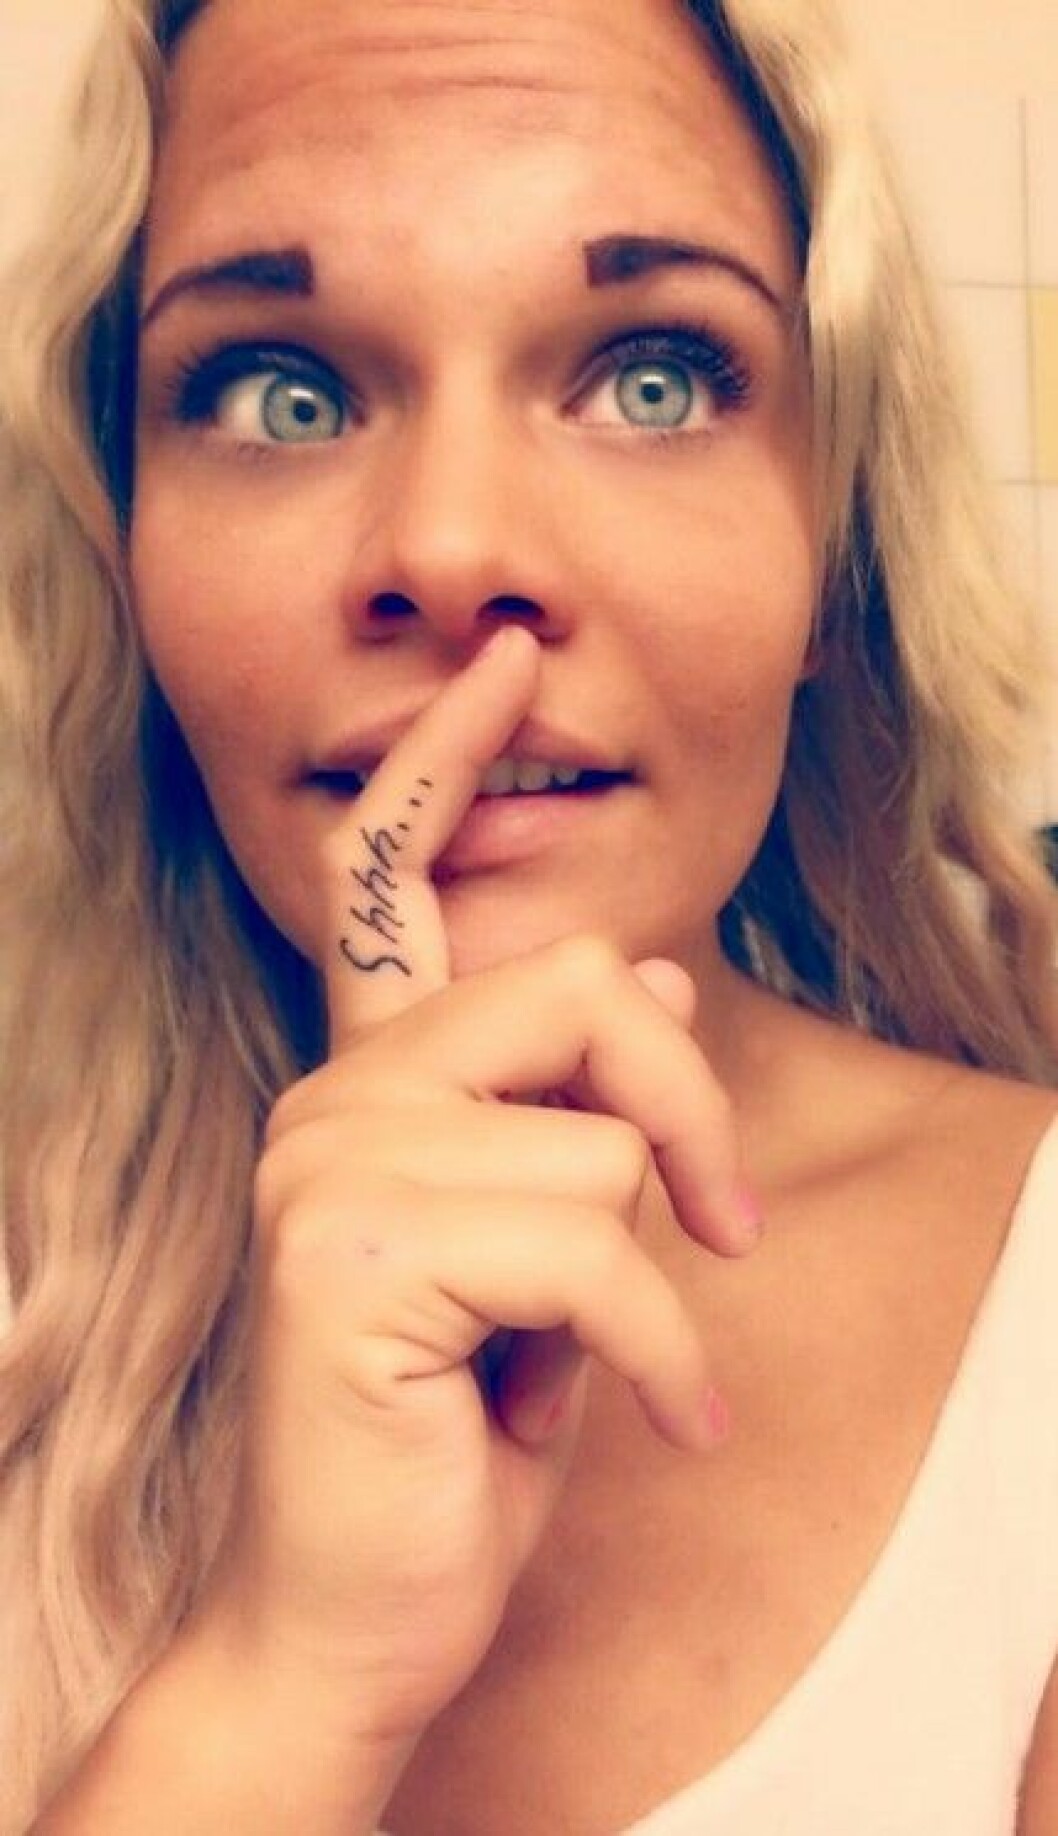 Louise Gren har tatuerat in "Shhh..." på pekfingret.